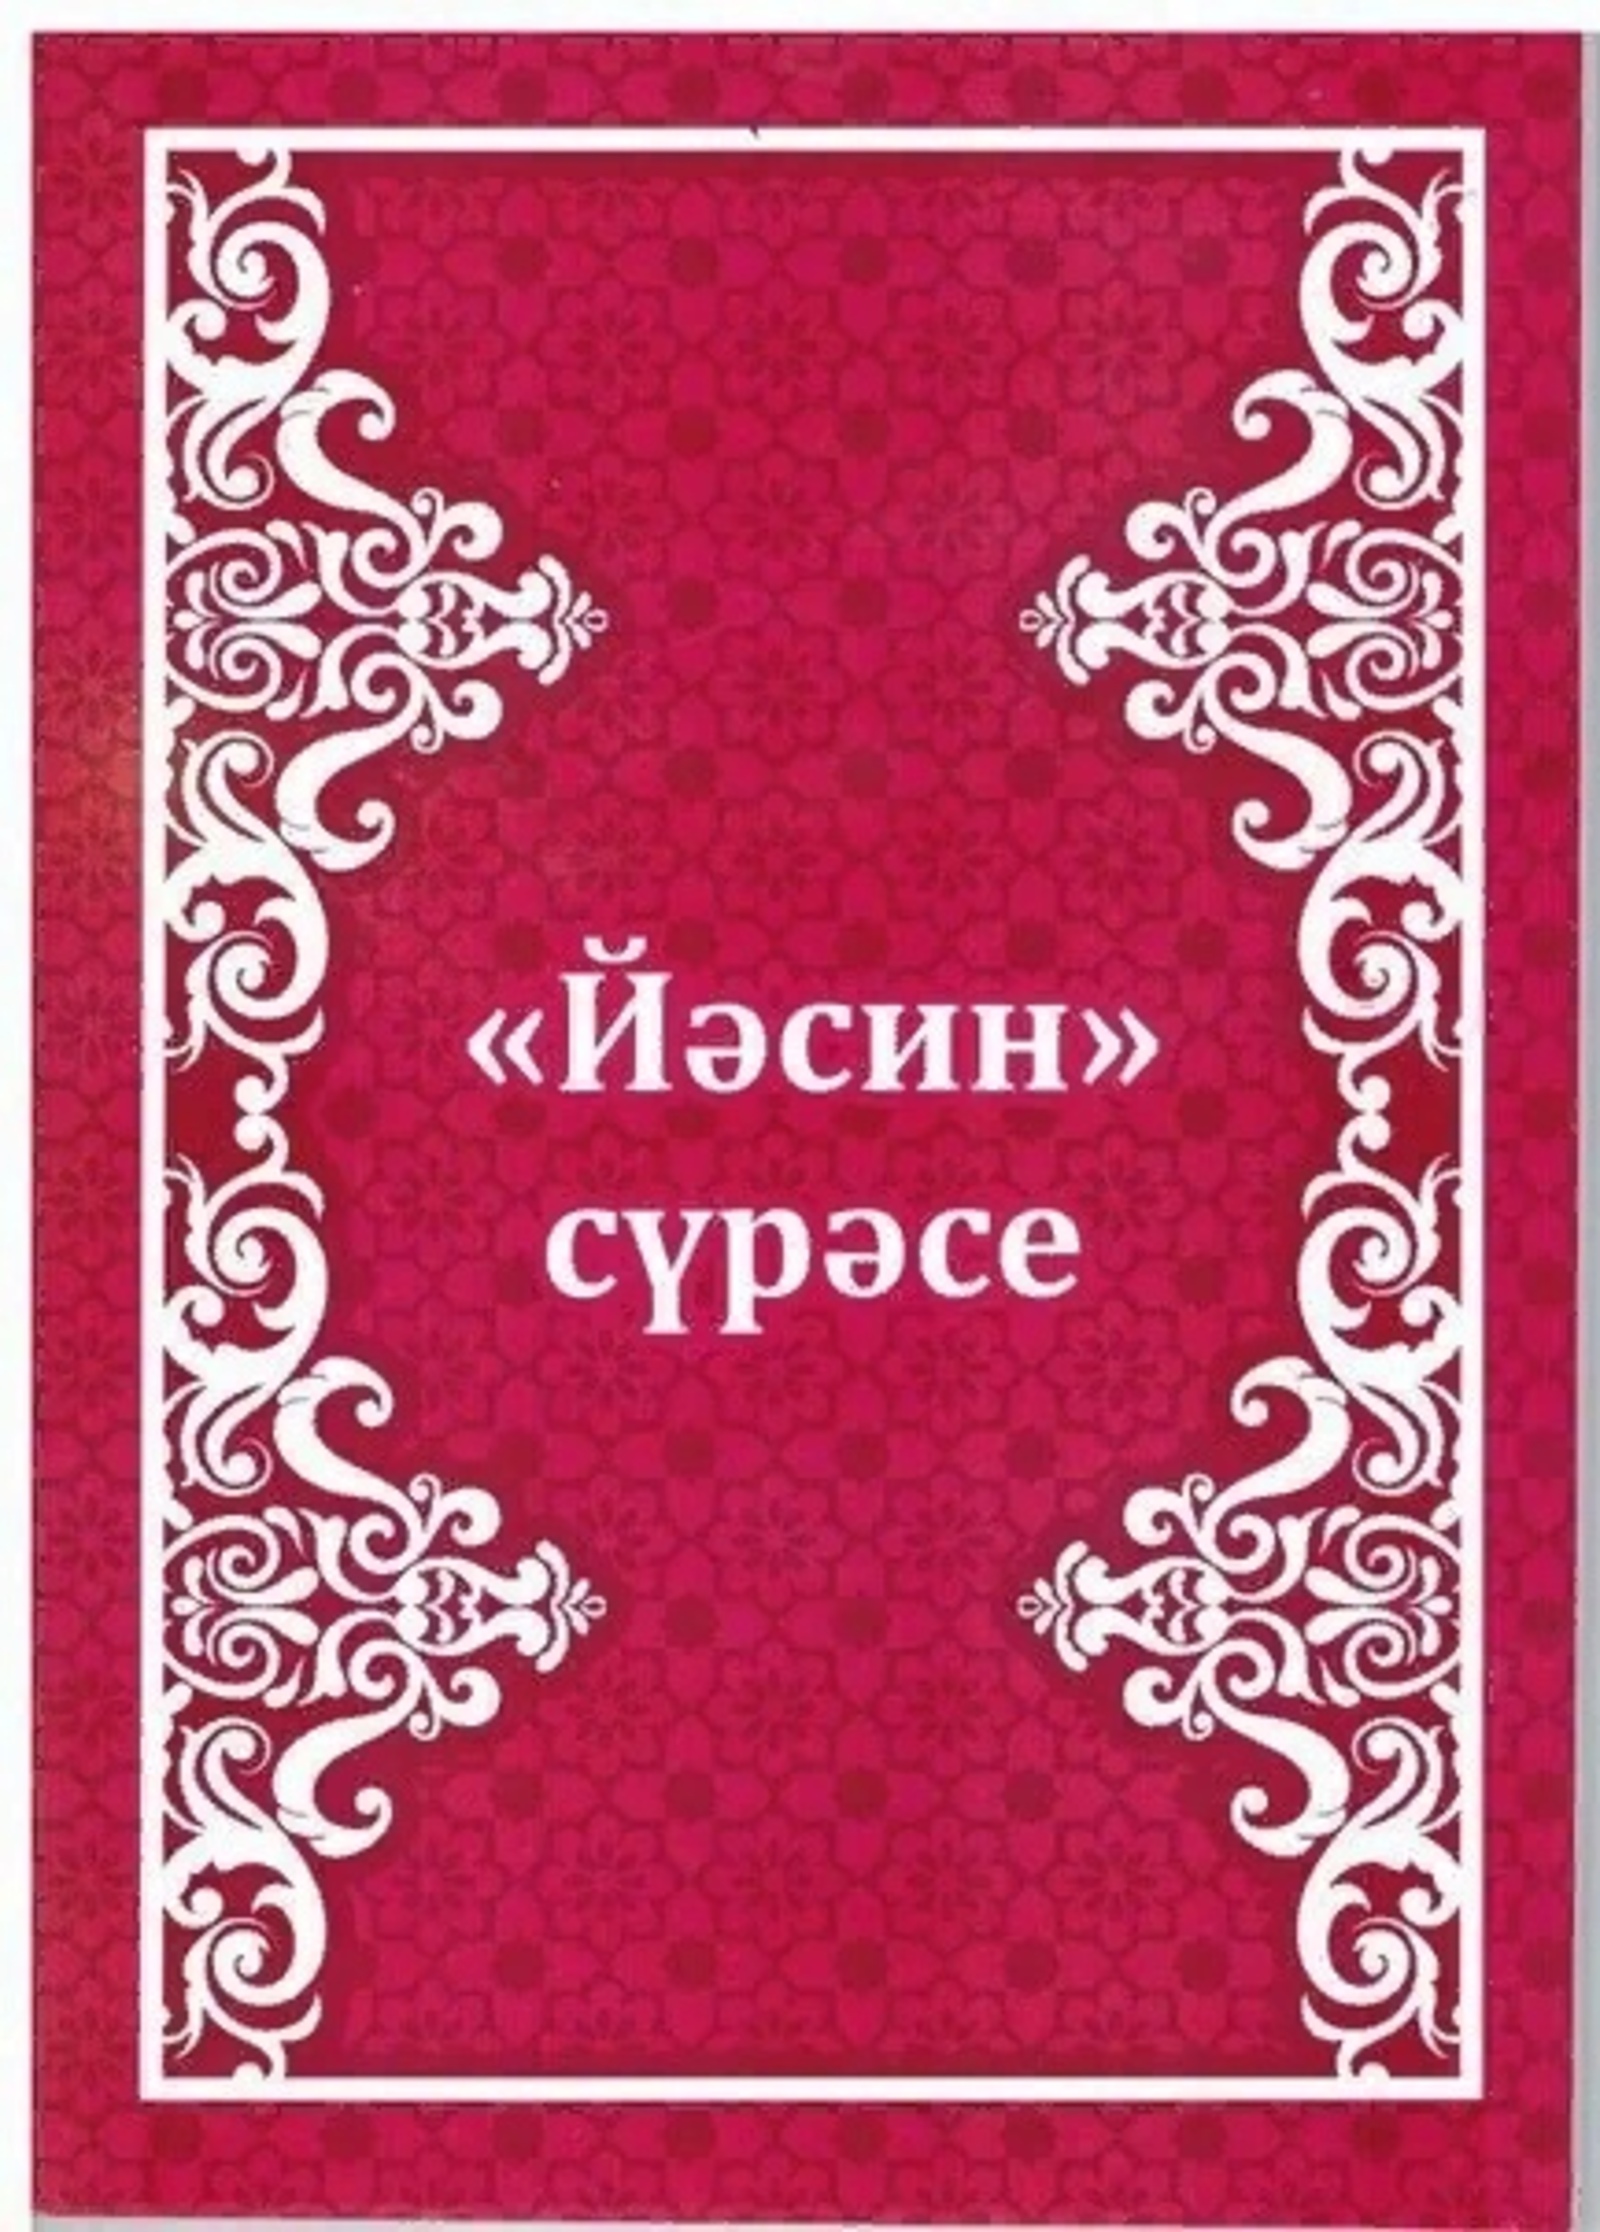 Сура на башкирском языке